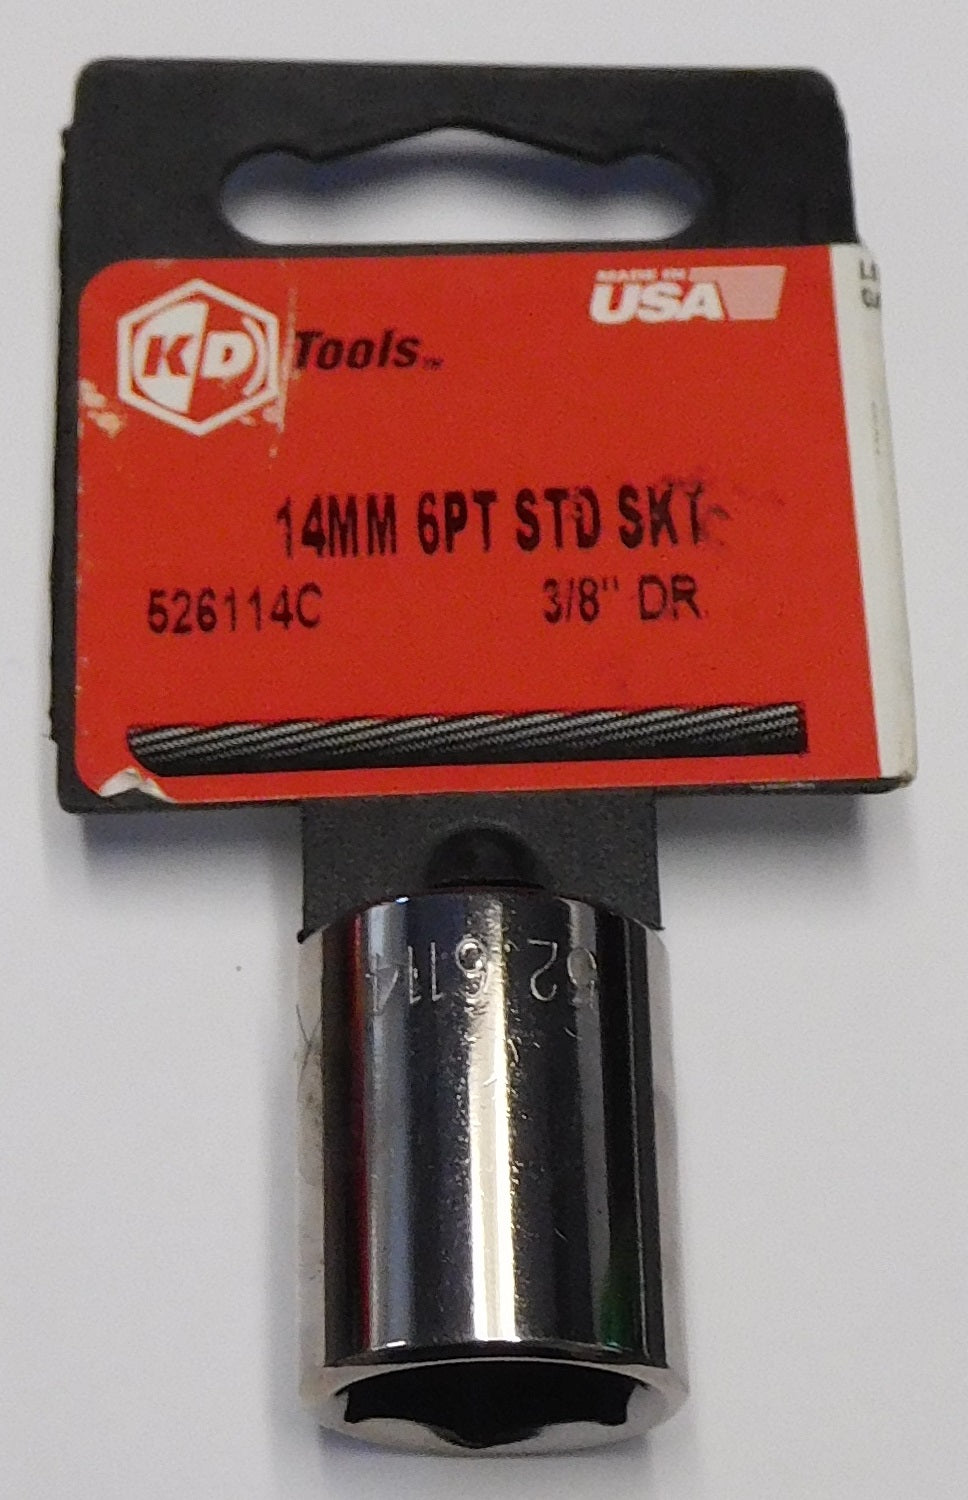 KD Tools 526114 14mm 6 Point Standard Socket 3/8" Drive USA